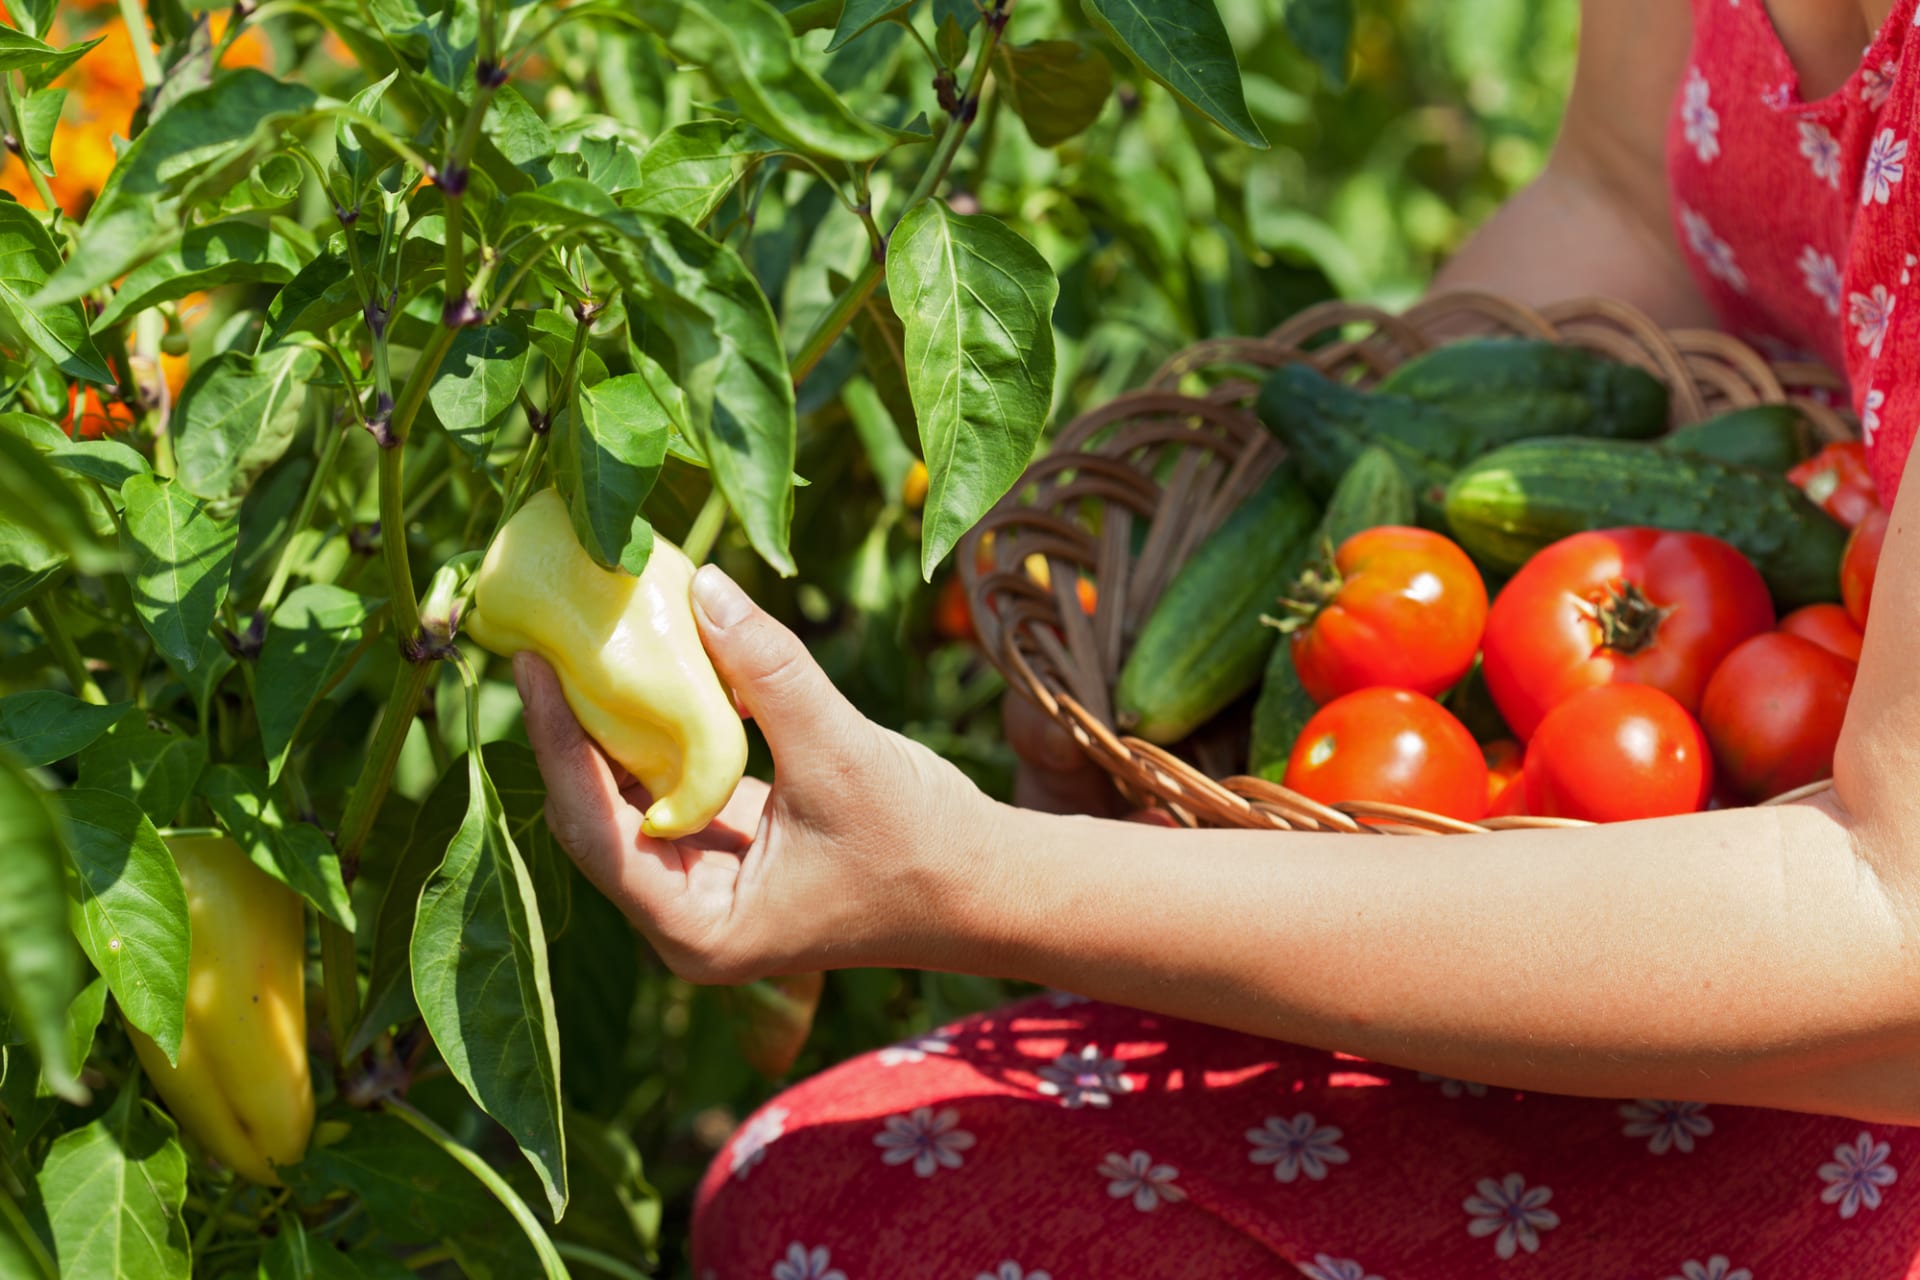 Bohatá úroda rajčat, paprik a okurek z vlastní zahrady